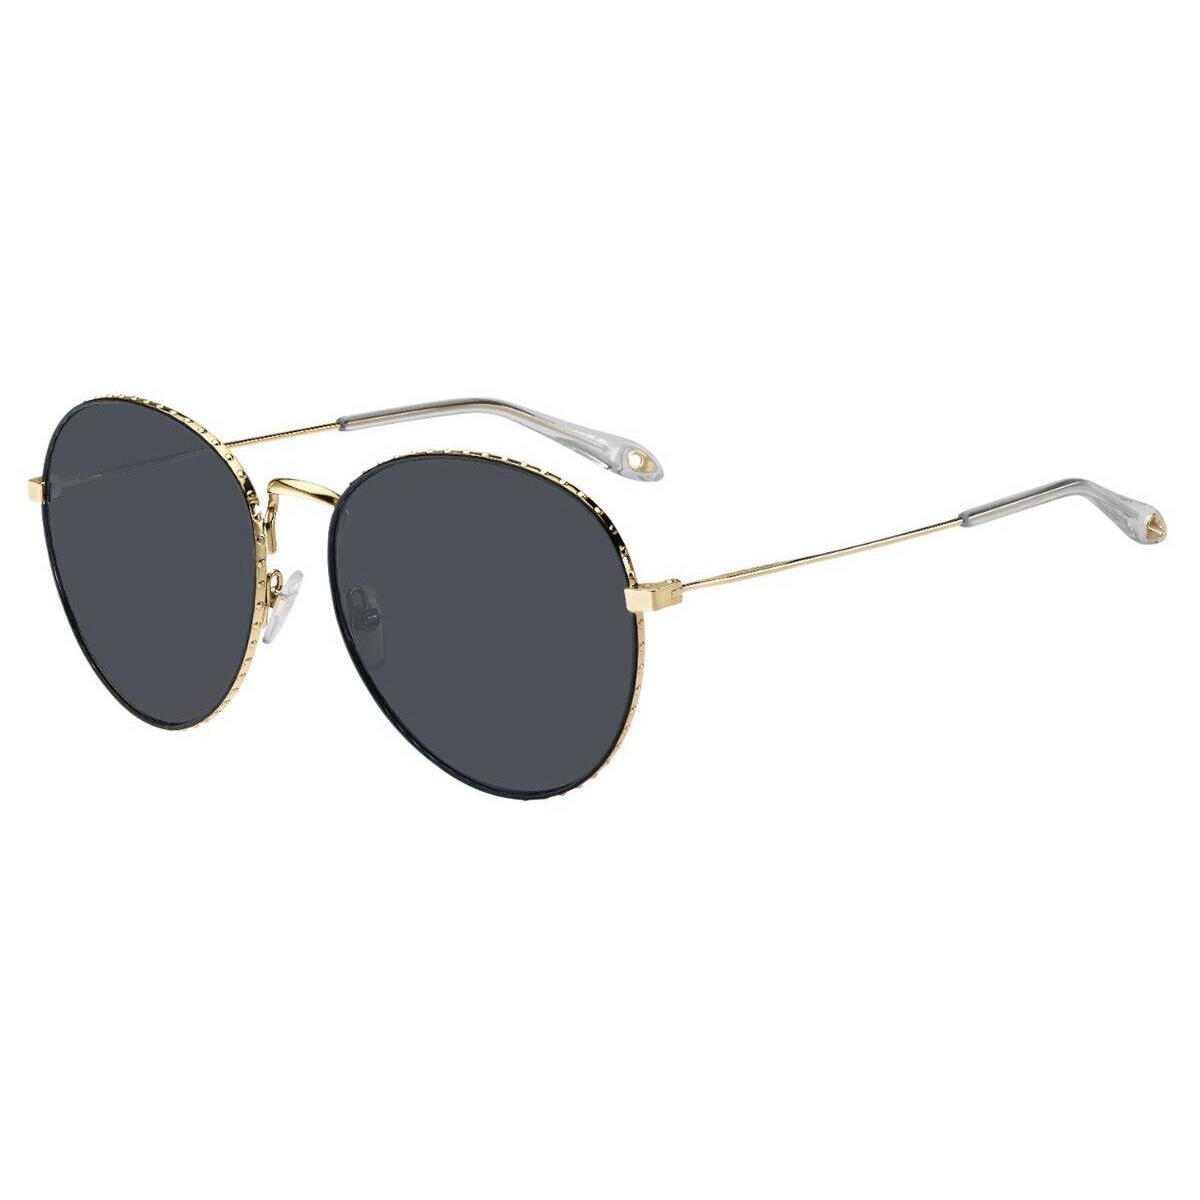 Givenchy GV7089/S J5G Gold Grey Sunglasses 60-18 Italy